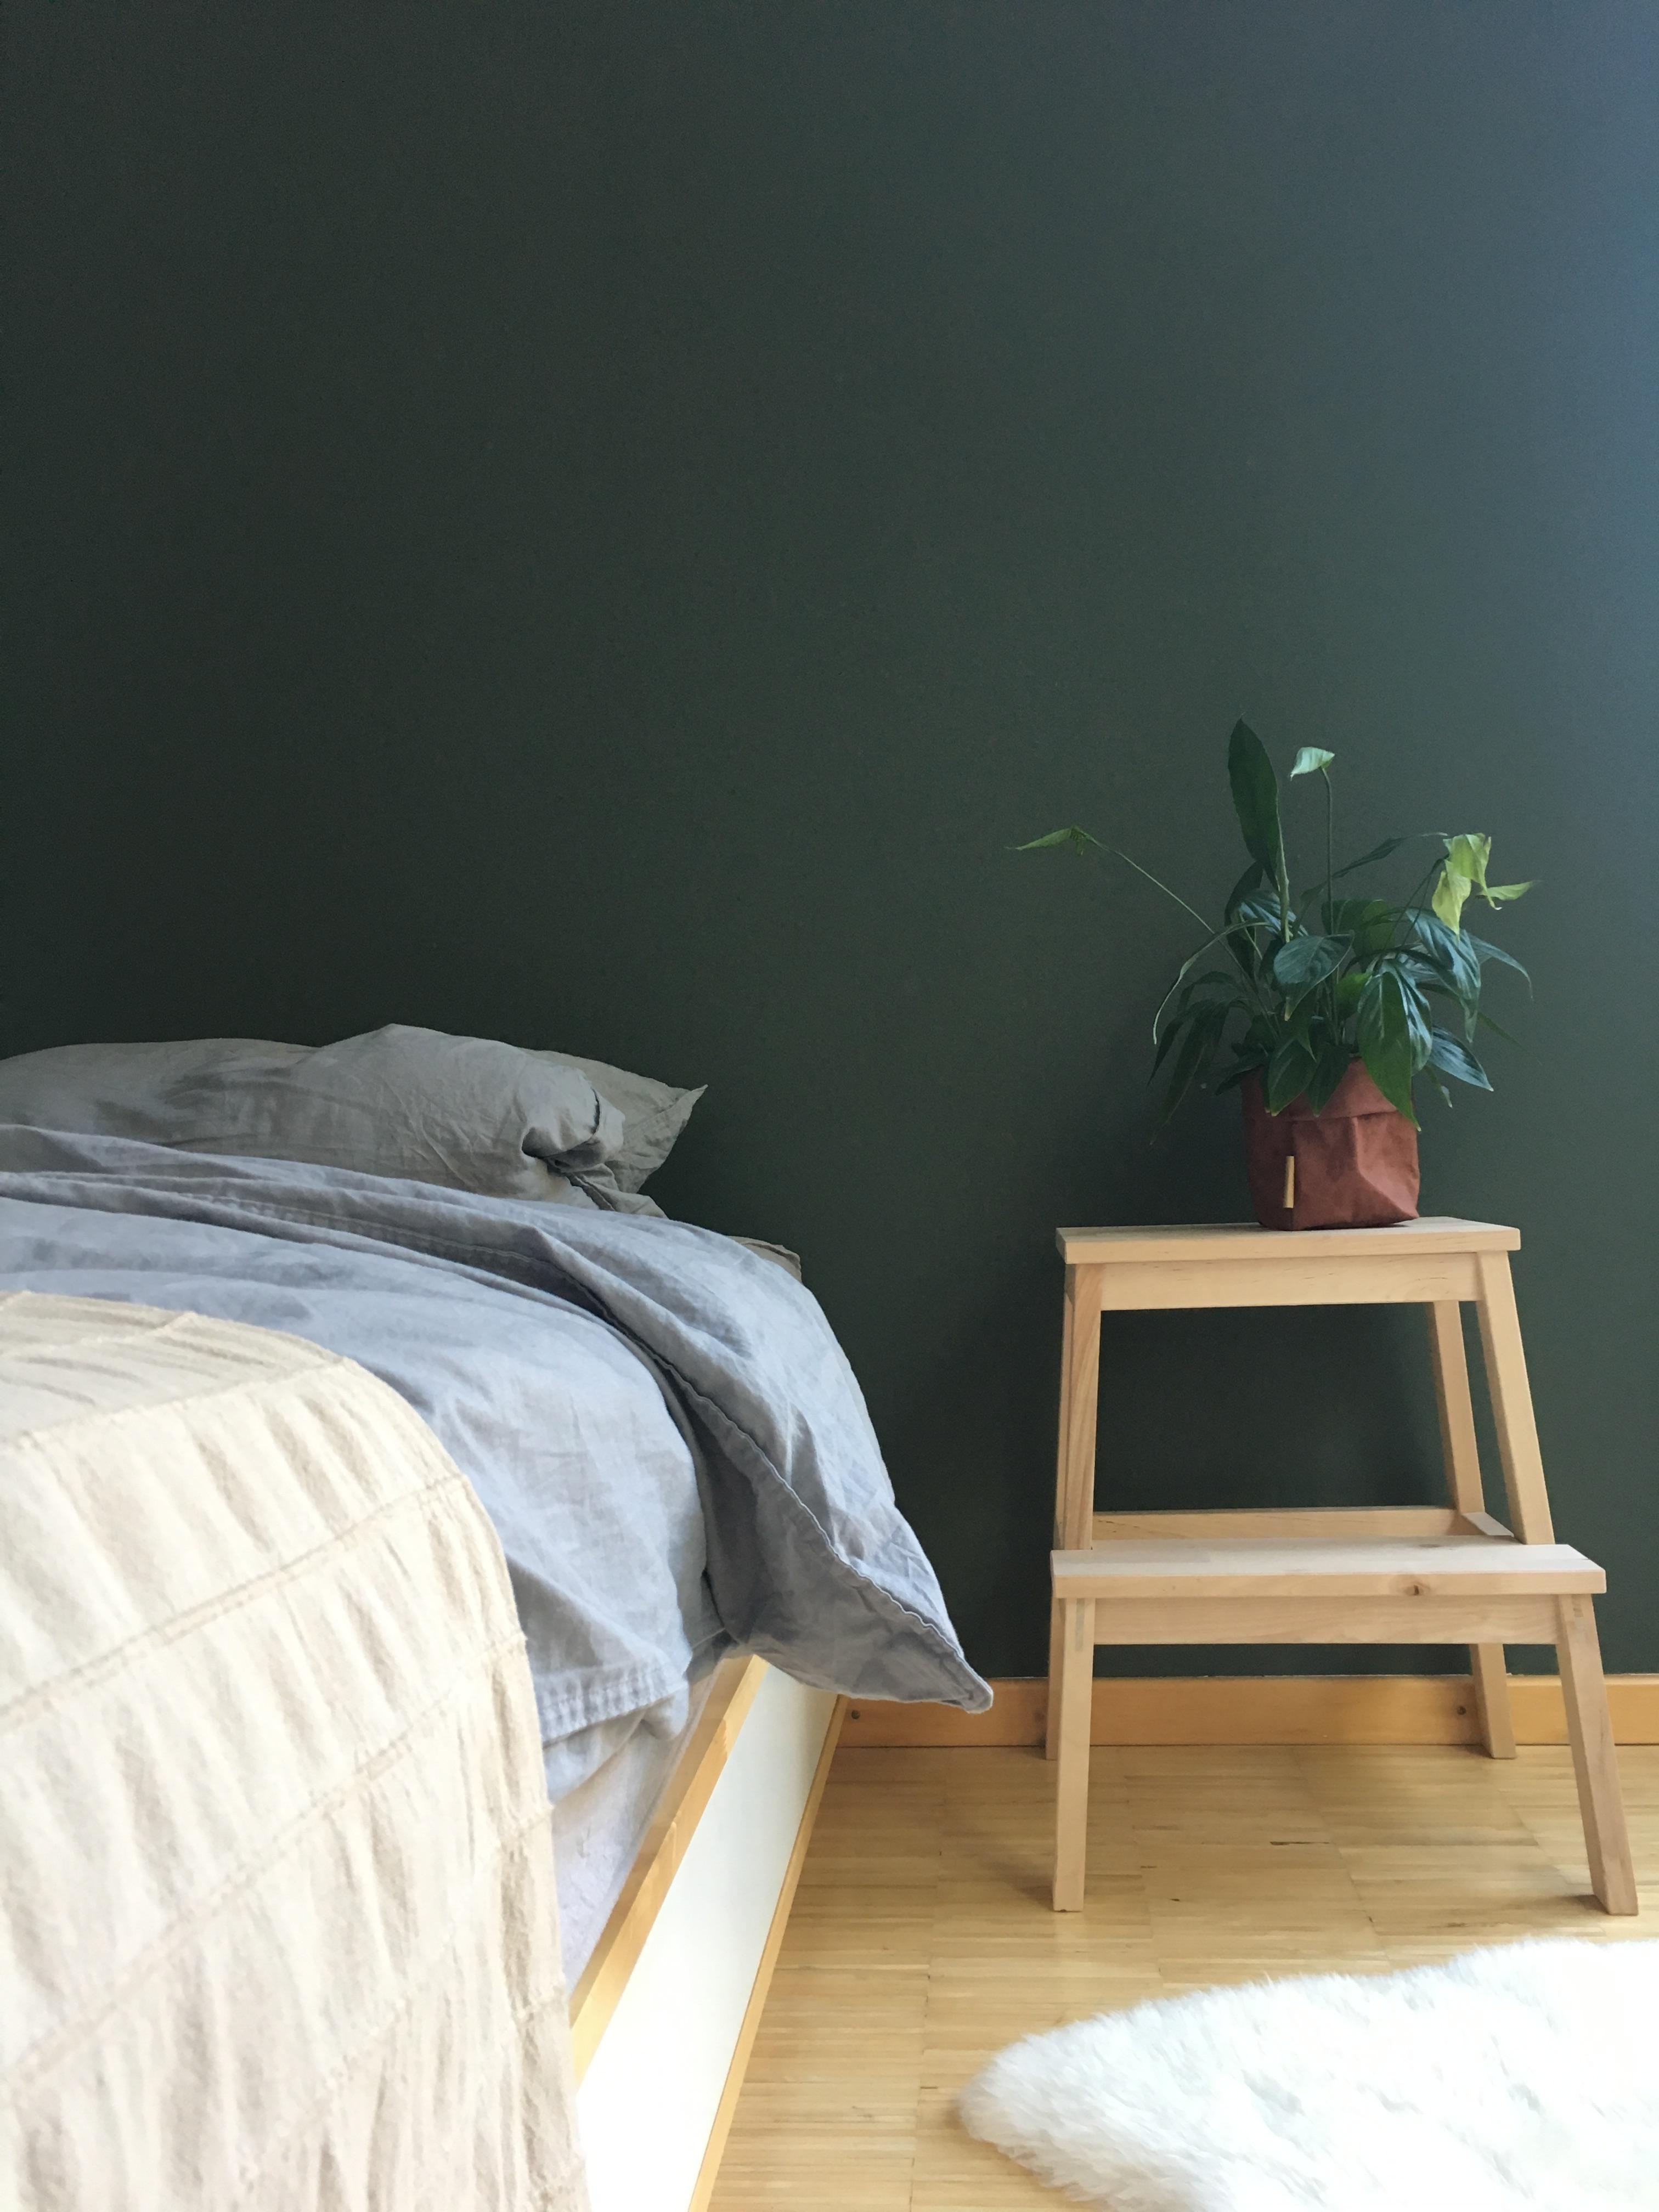 Eine grüne Wand bringt Harmonie!

#interior #home #green #wandfarbe #schlafzimmer #holz #leinen #farbe #pflanzen #bett